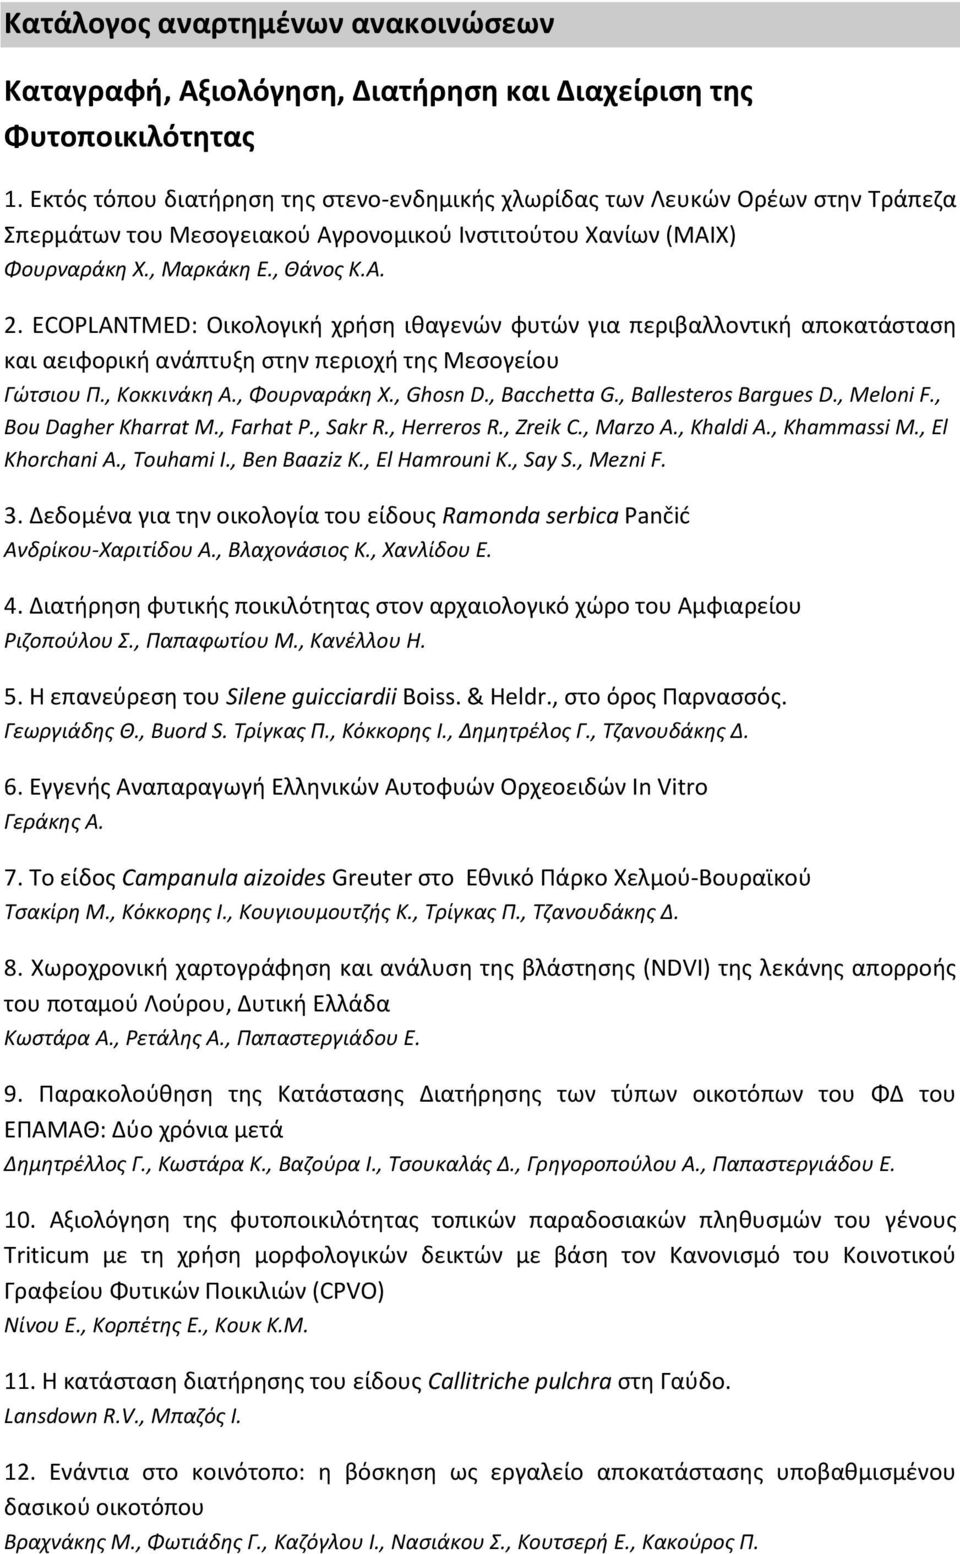 ECOPLANTMED: Οικολογική χρήση ιθαγενών φυτών για περιβαλλοντική αποκατάσταση και αειφορική ανάπτυξη στην περιοχή της Μεσογείου Γώτσιου Π., Κοκκινάκη Α., Φουρναράκη Χ., Ghosn D., Bacchetta G.